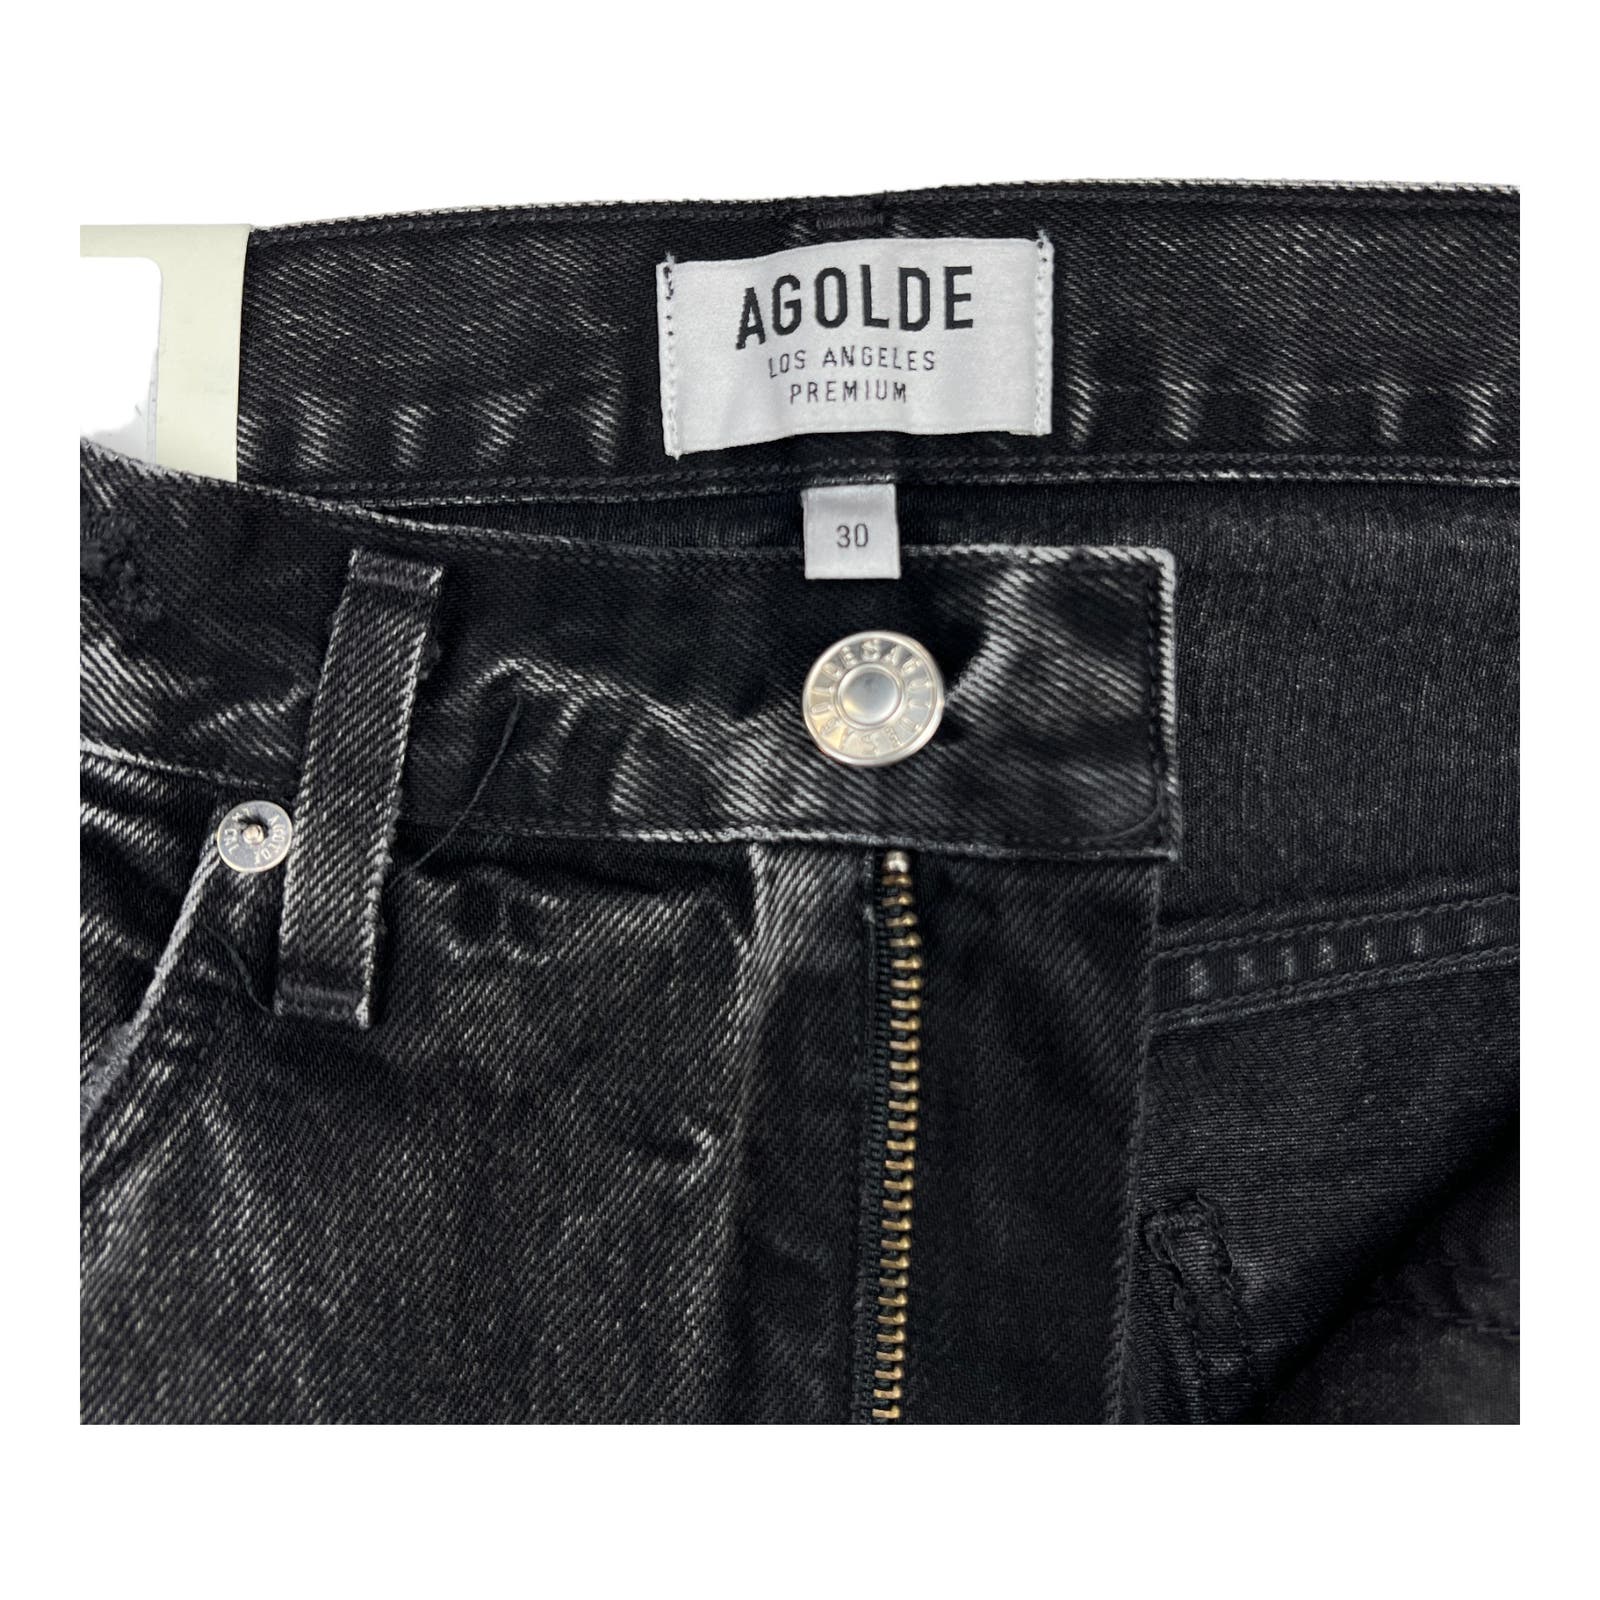 Agolde Men Jeans Tapered US 30 Slim Fit Denim Washed Cotton